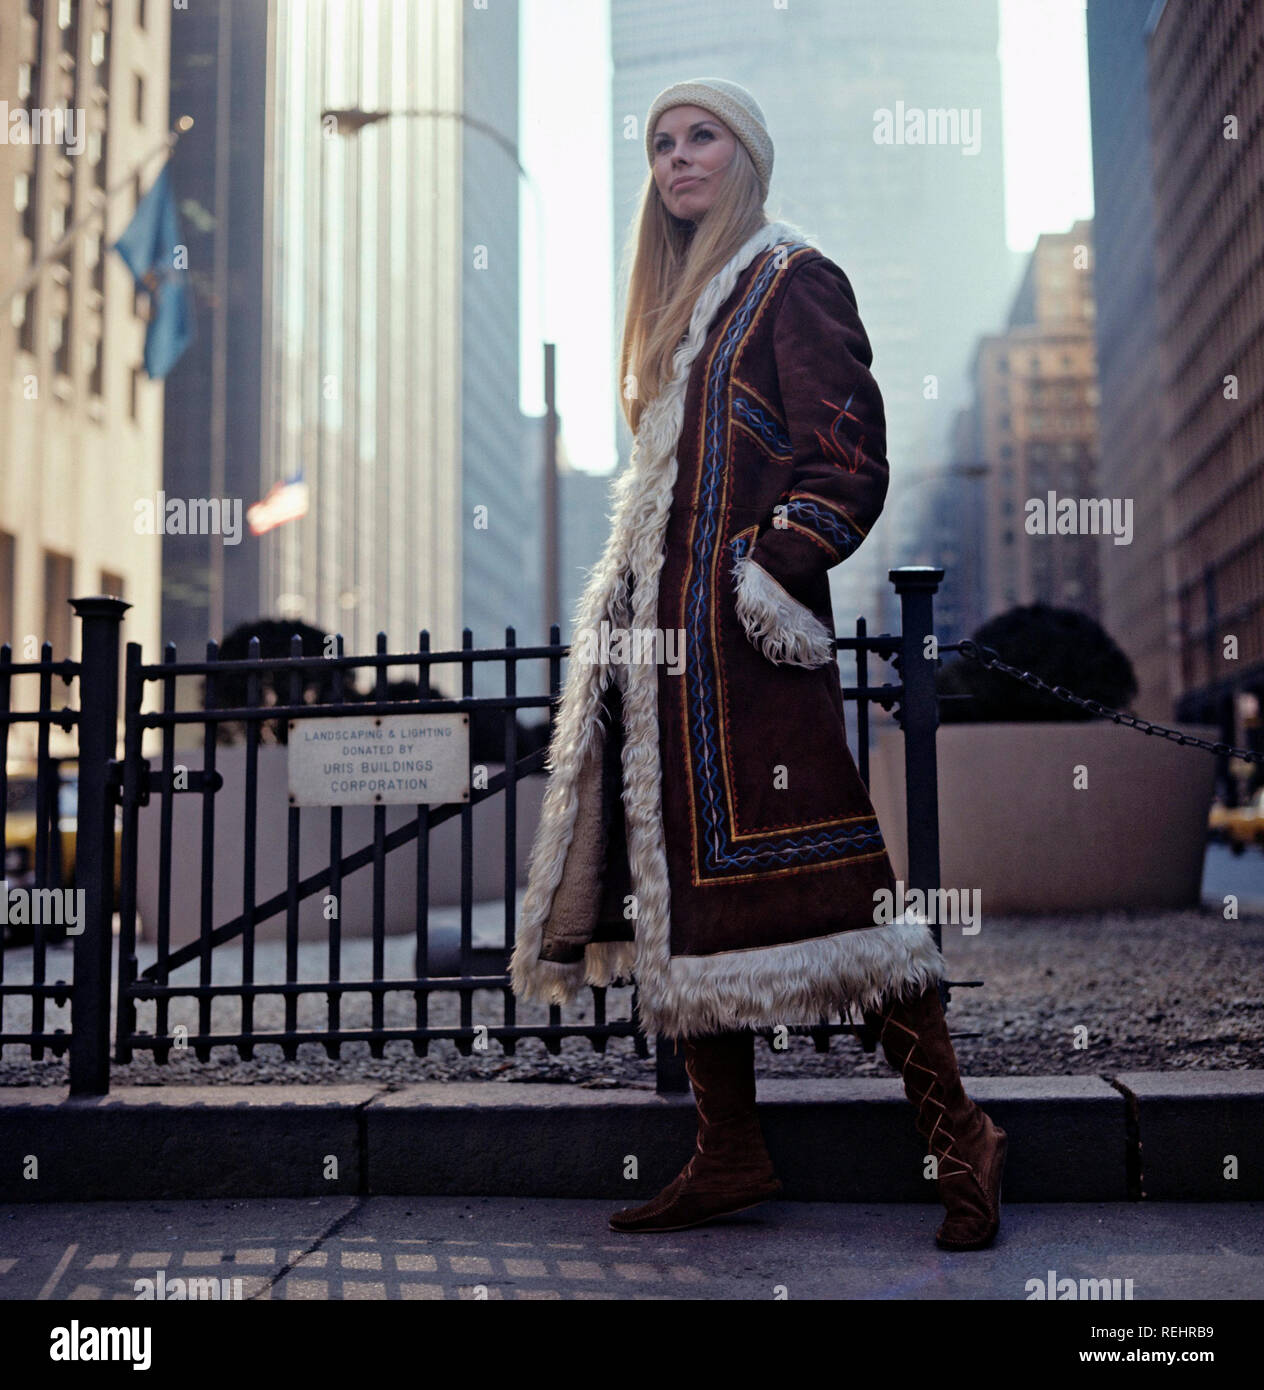 70er Jahre Lifestyle und Mode. Eine junge Frau in einem typischen 70er Jahre Mantel. Ihr Name ist Marita Lindholm, Model. 1971 Stockfoto